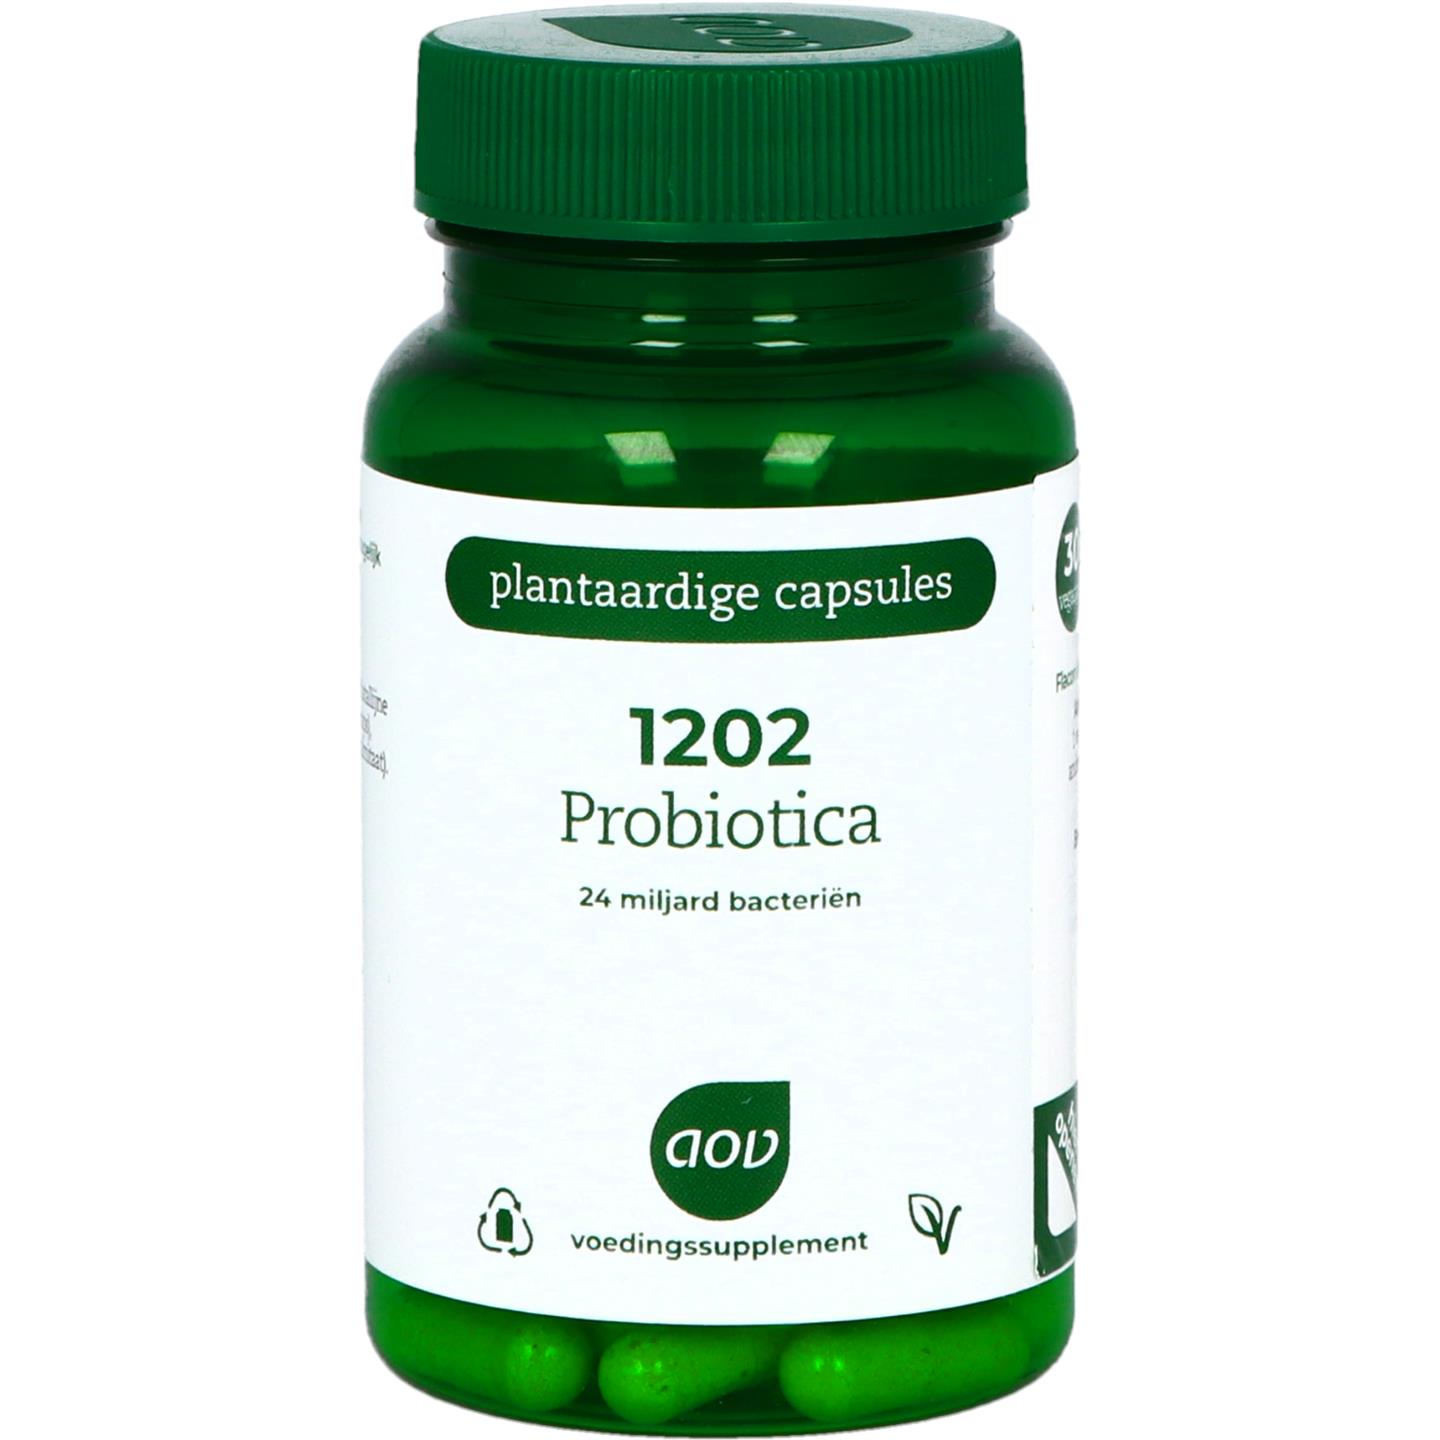 1202 Probiotica 24 miljard bacterin